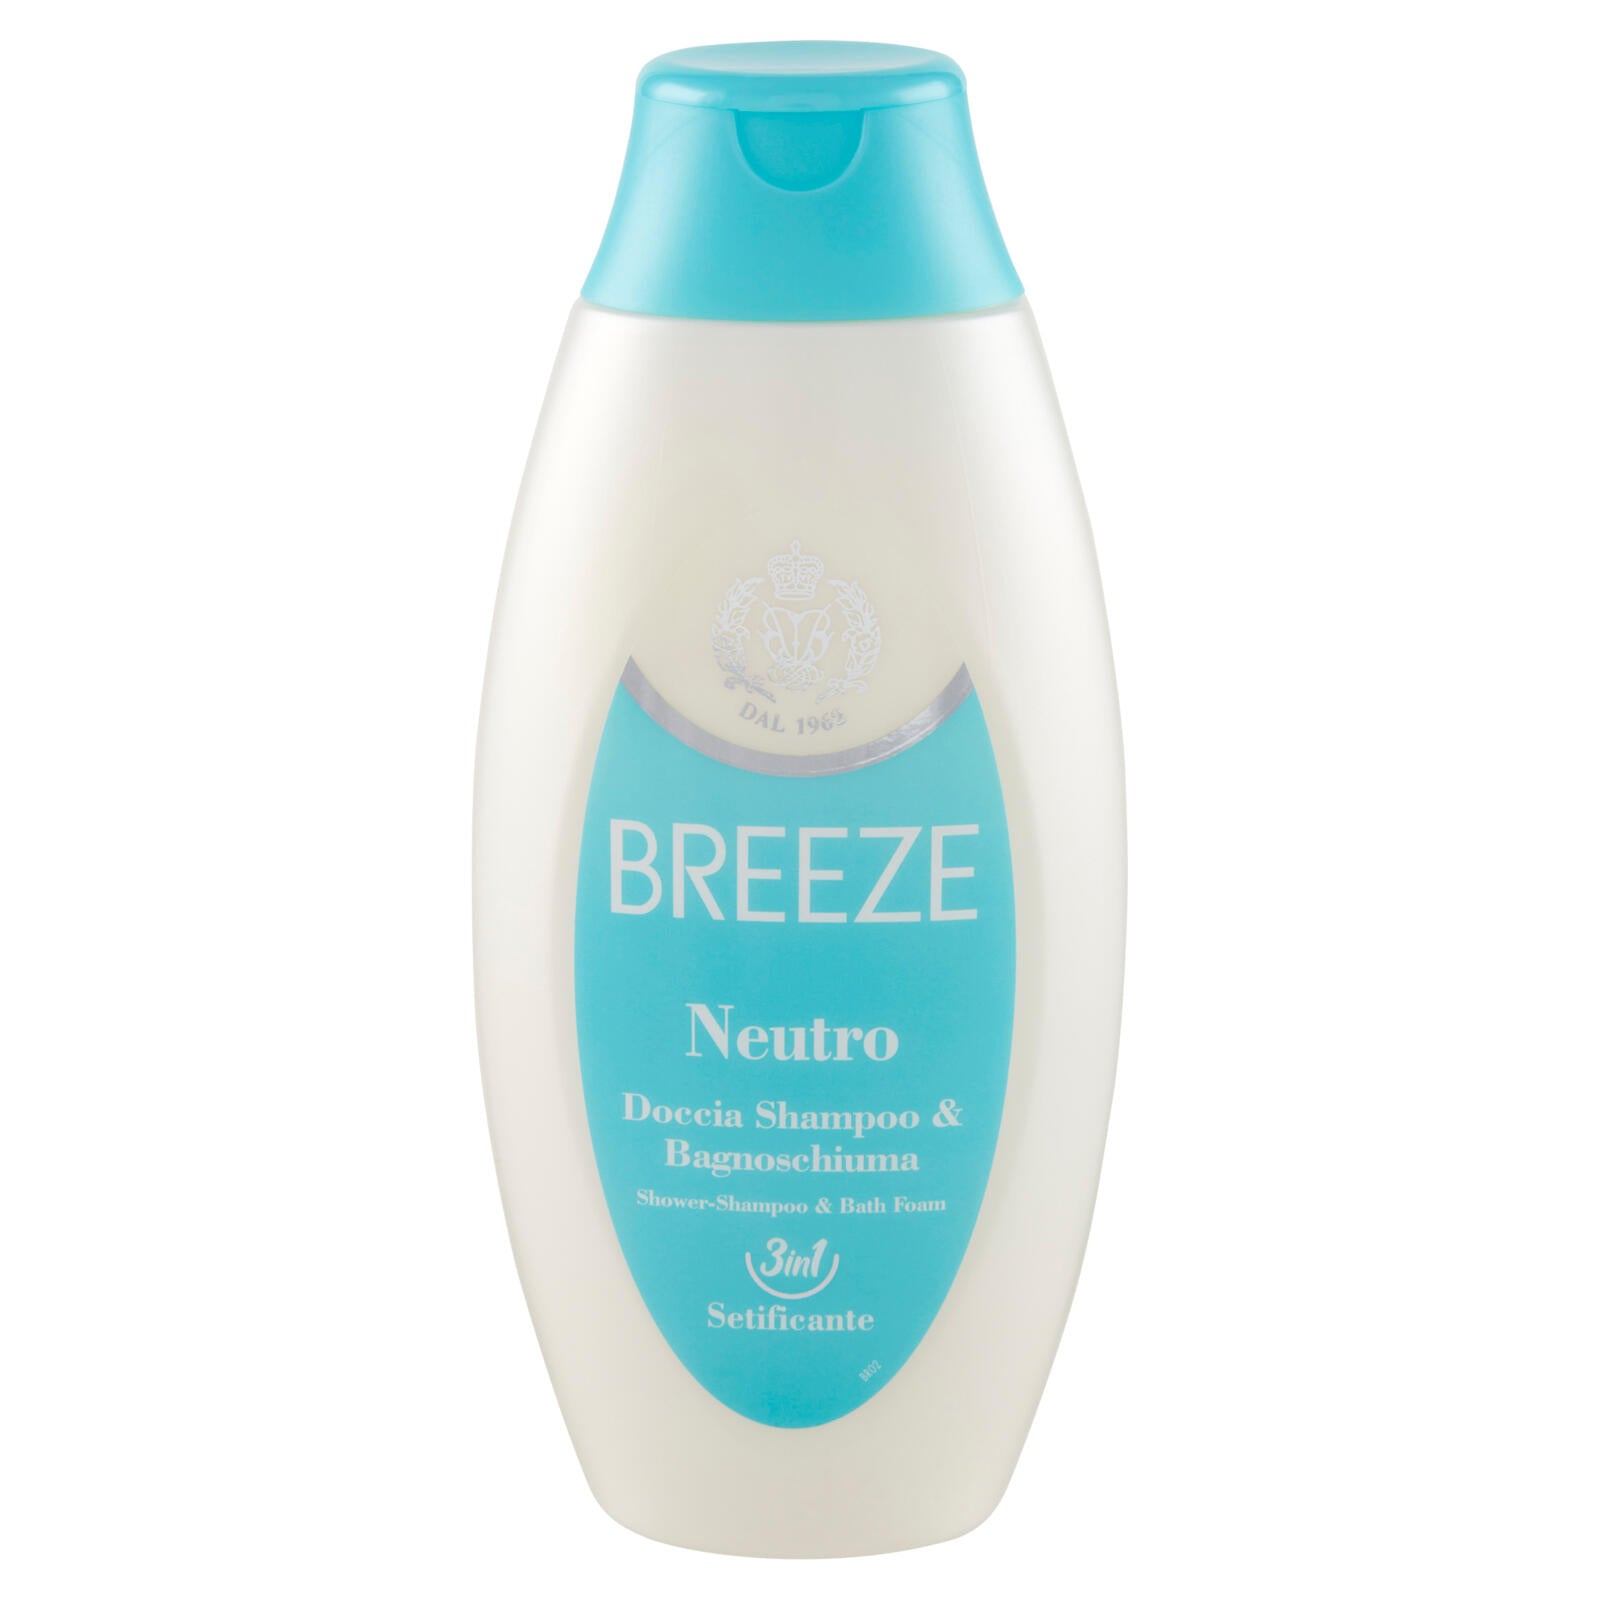 Breeze Neutro Doccia Shampoo & Bagnoschiuma Setificante 400 mL